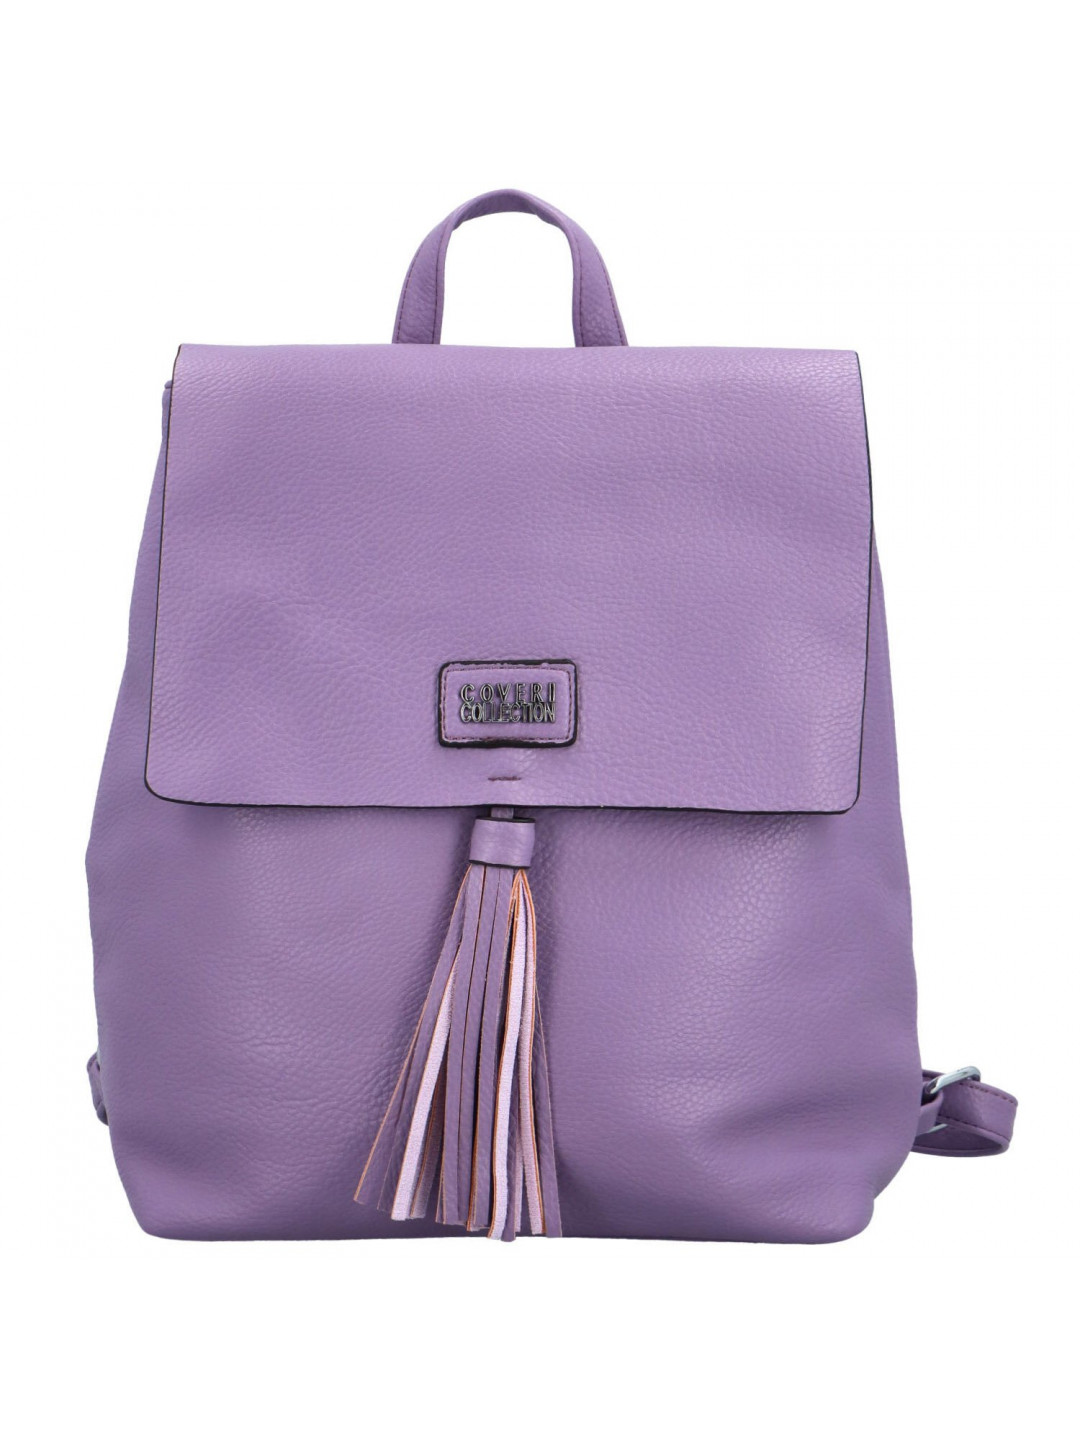 Stylový dámský koženkový kabelko batoh Barbalea fialový